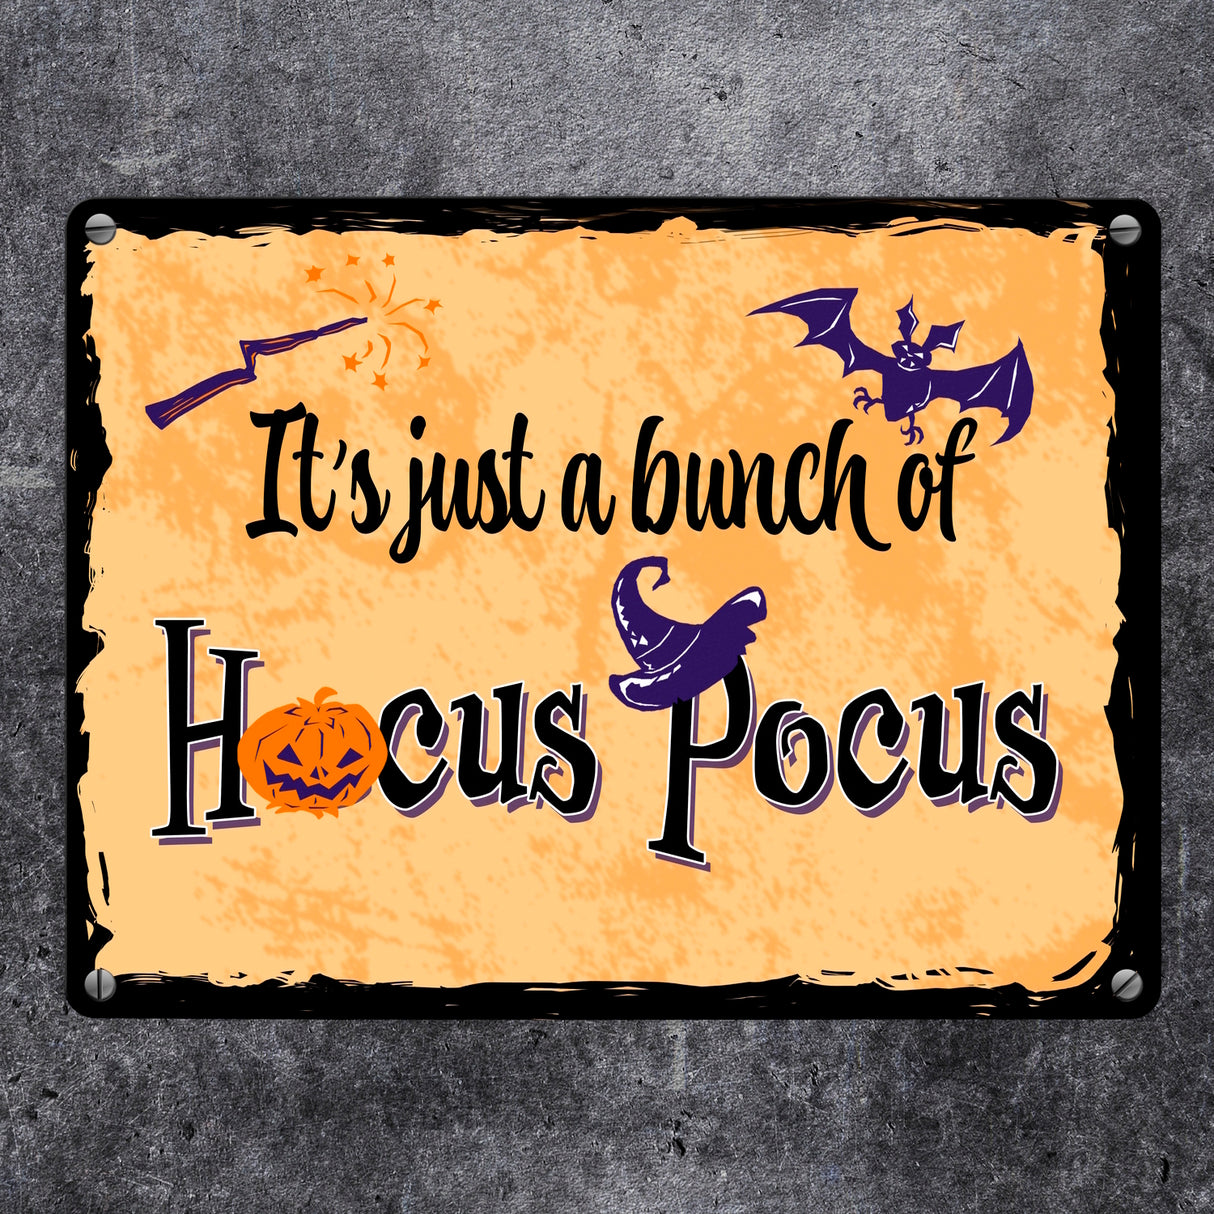 Metallschild mit Halloween Motiv und Spruch - It's just a bunch of Hocus Pocus -